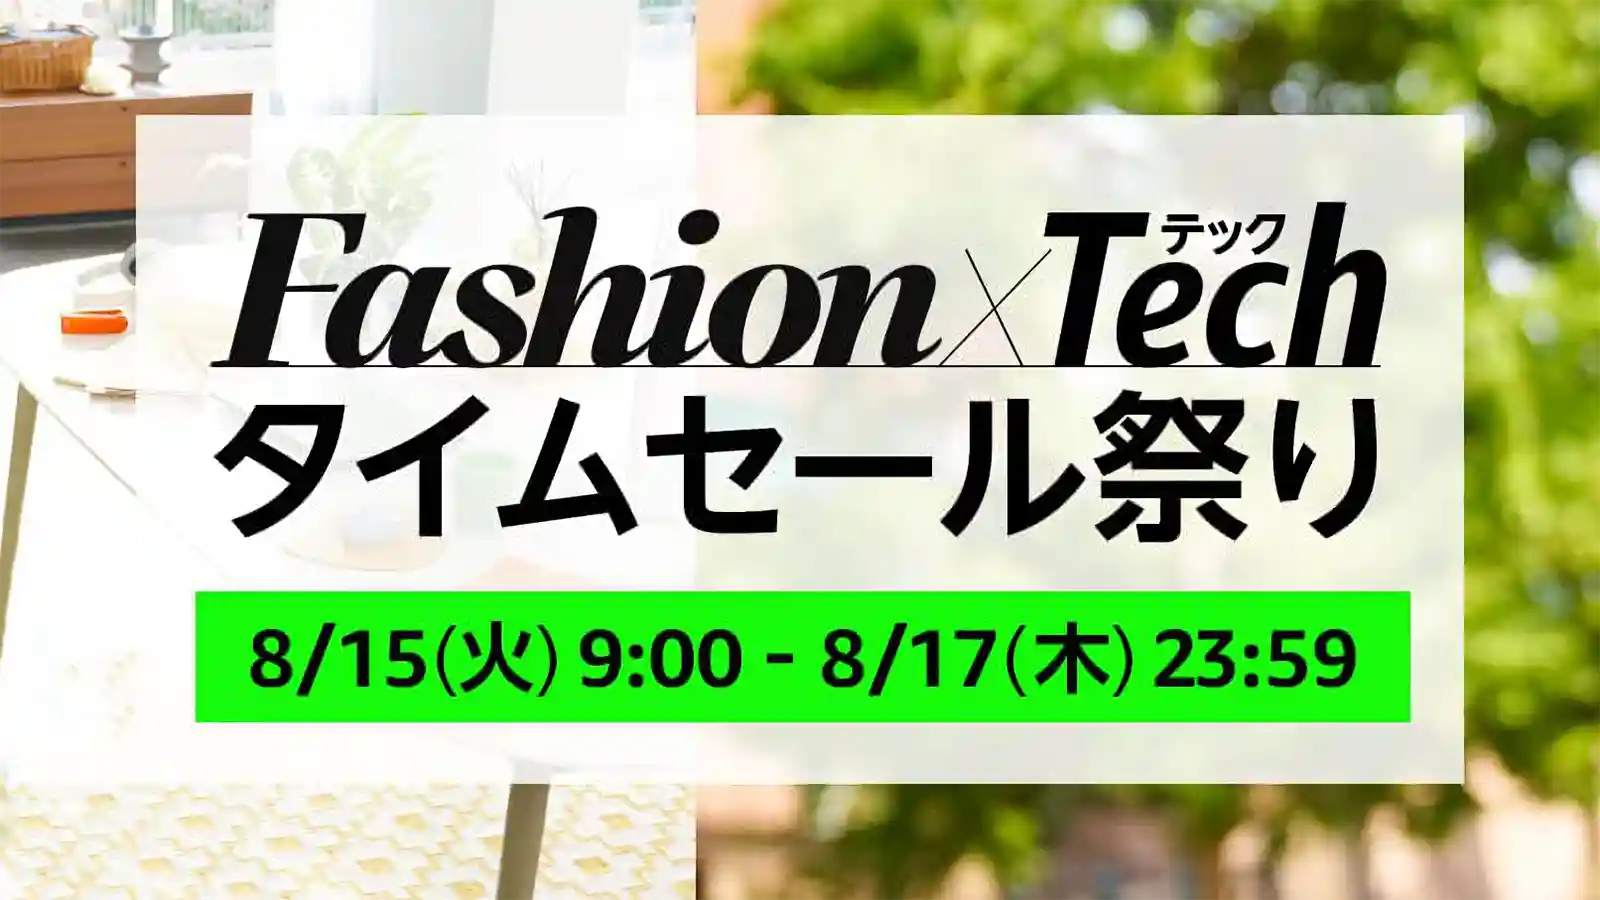 Amazon Fashion ファッション Tech タイムセール祭り